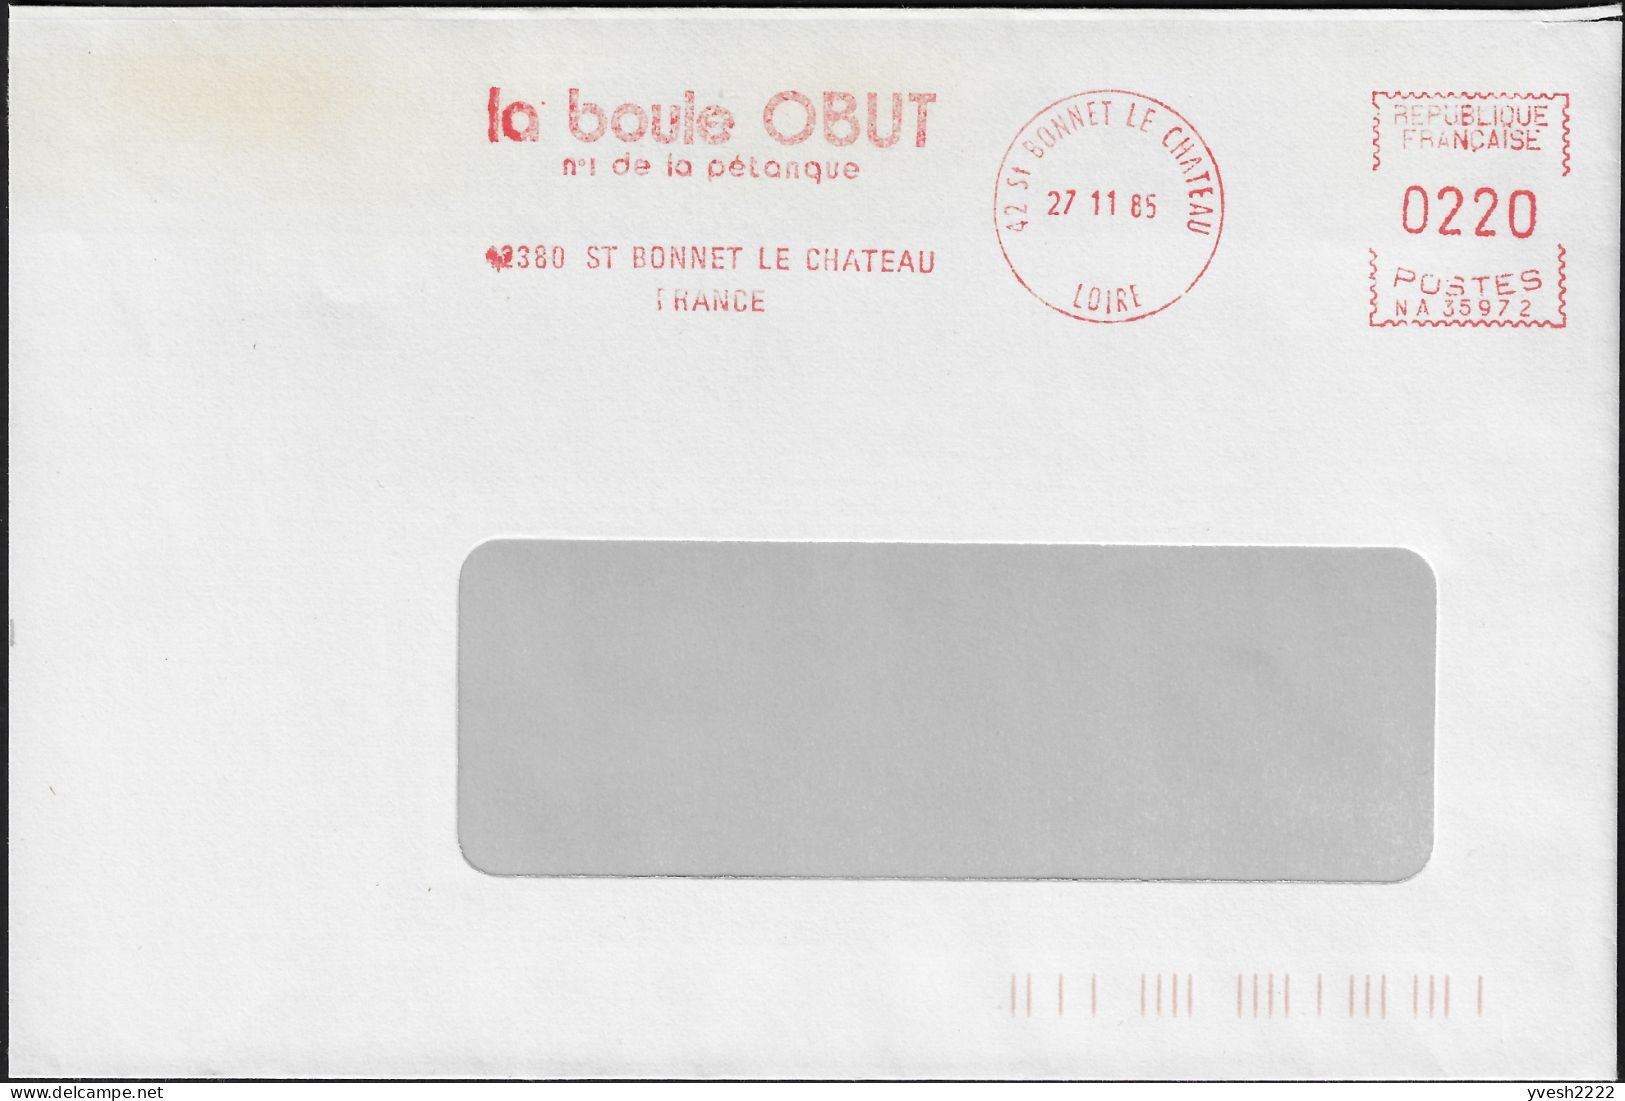 France 1985. Empreinte De Machine à Affranchir Obut. La Boule Obut, N° 1 De La Pétanque - Petanque